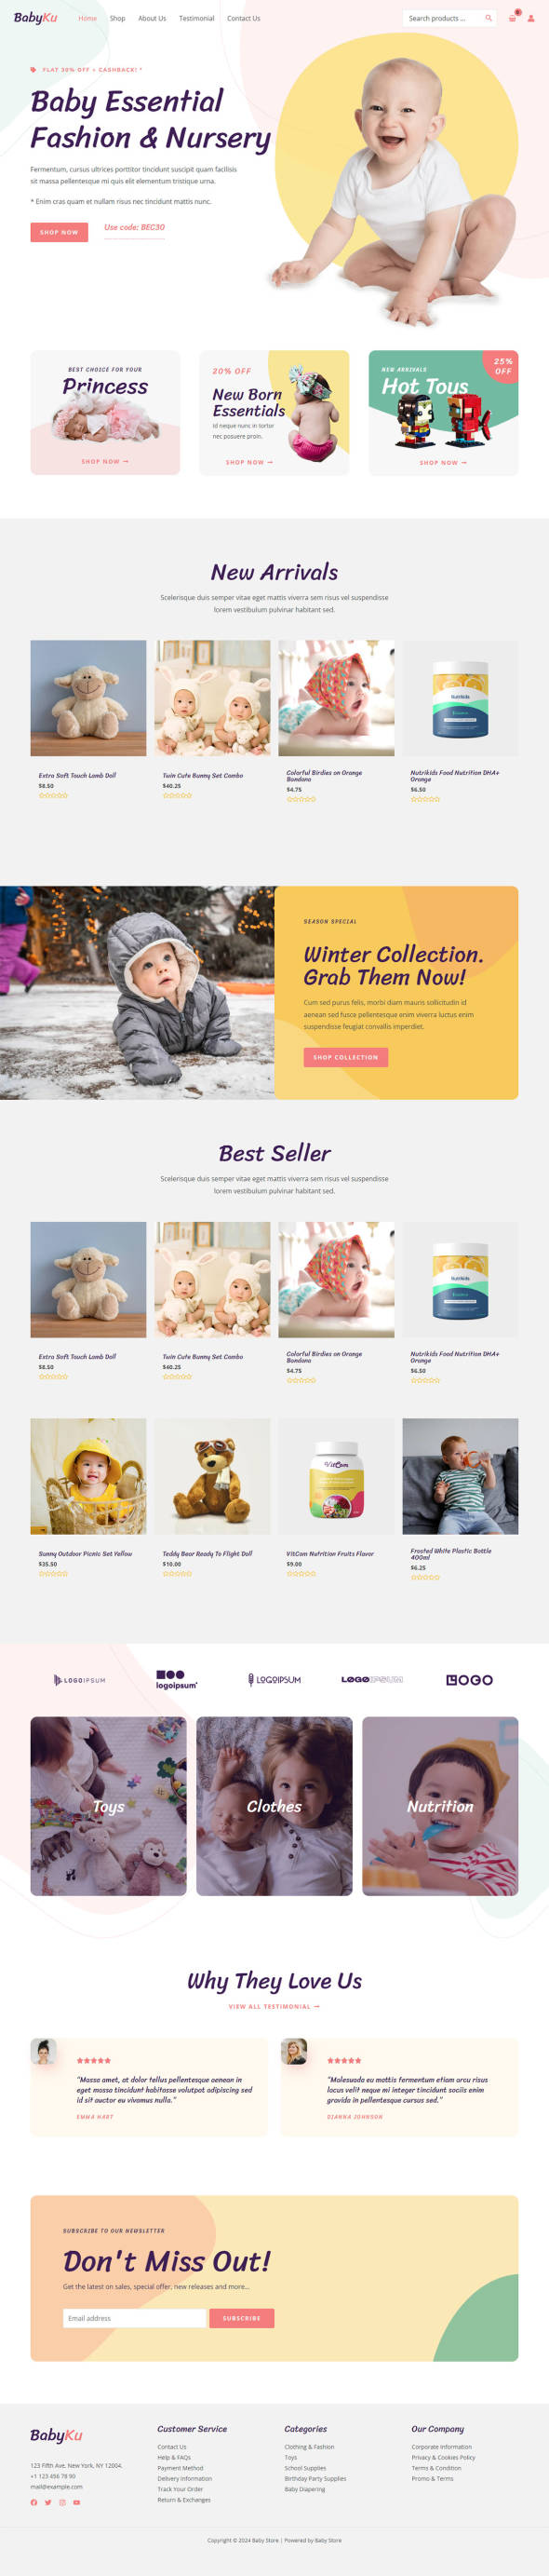 整站模板_母婴与婴幼儿用品商店网站成品模板_一键导入式快速建站模板